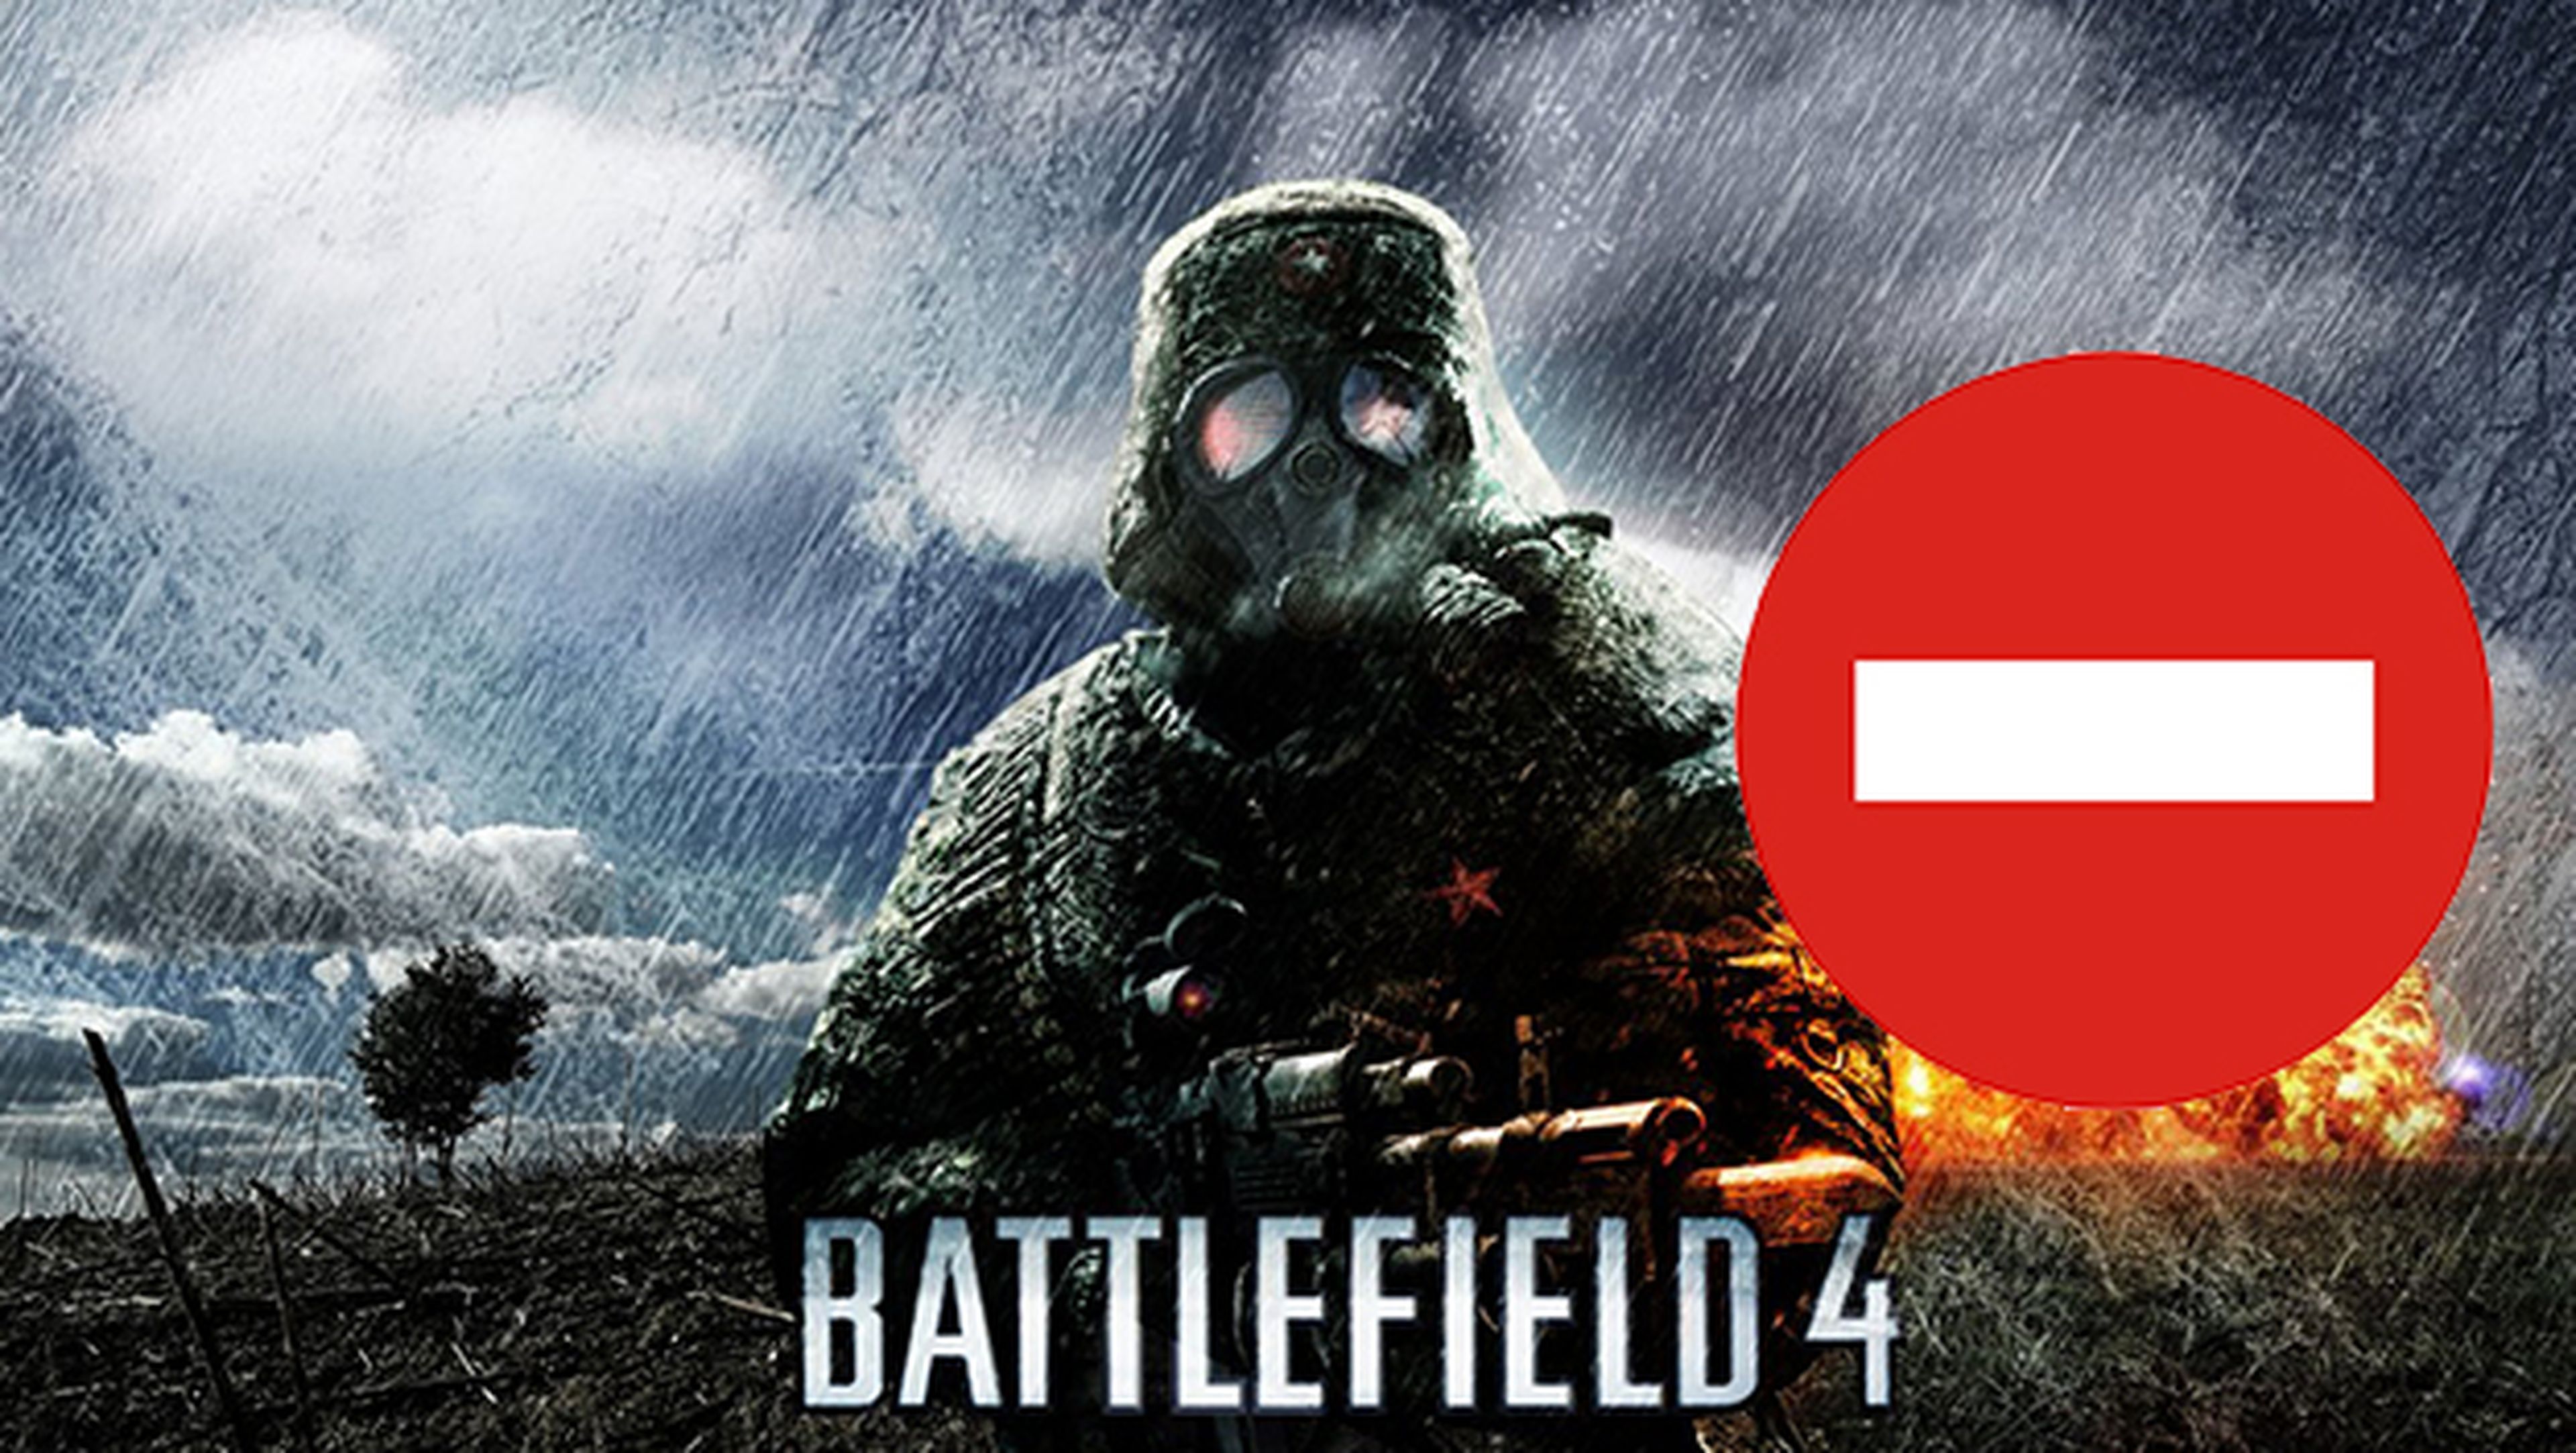 El gobierno chino prohíbe el juego Battlefield 4